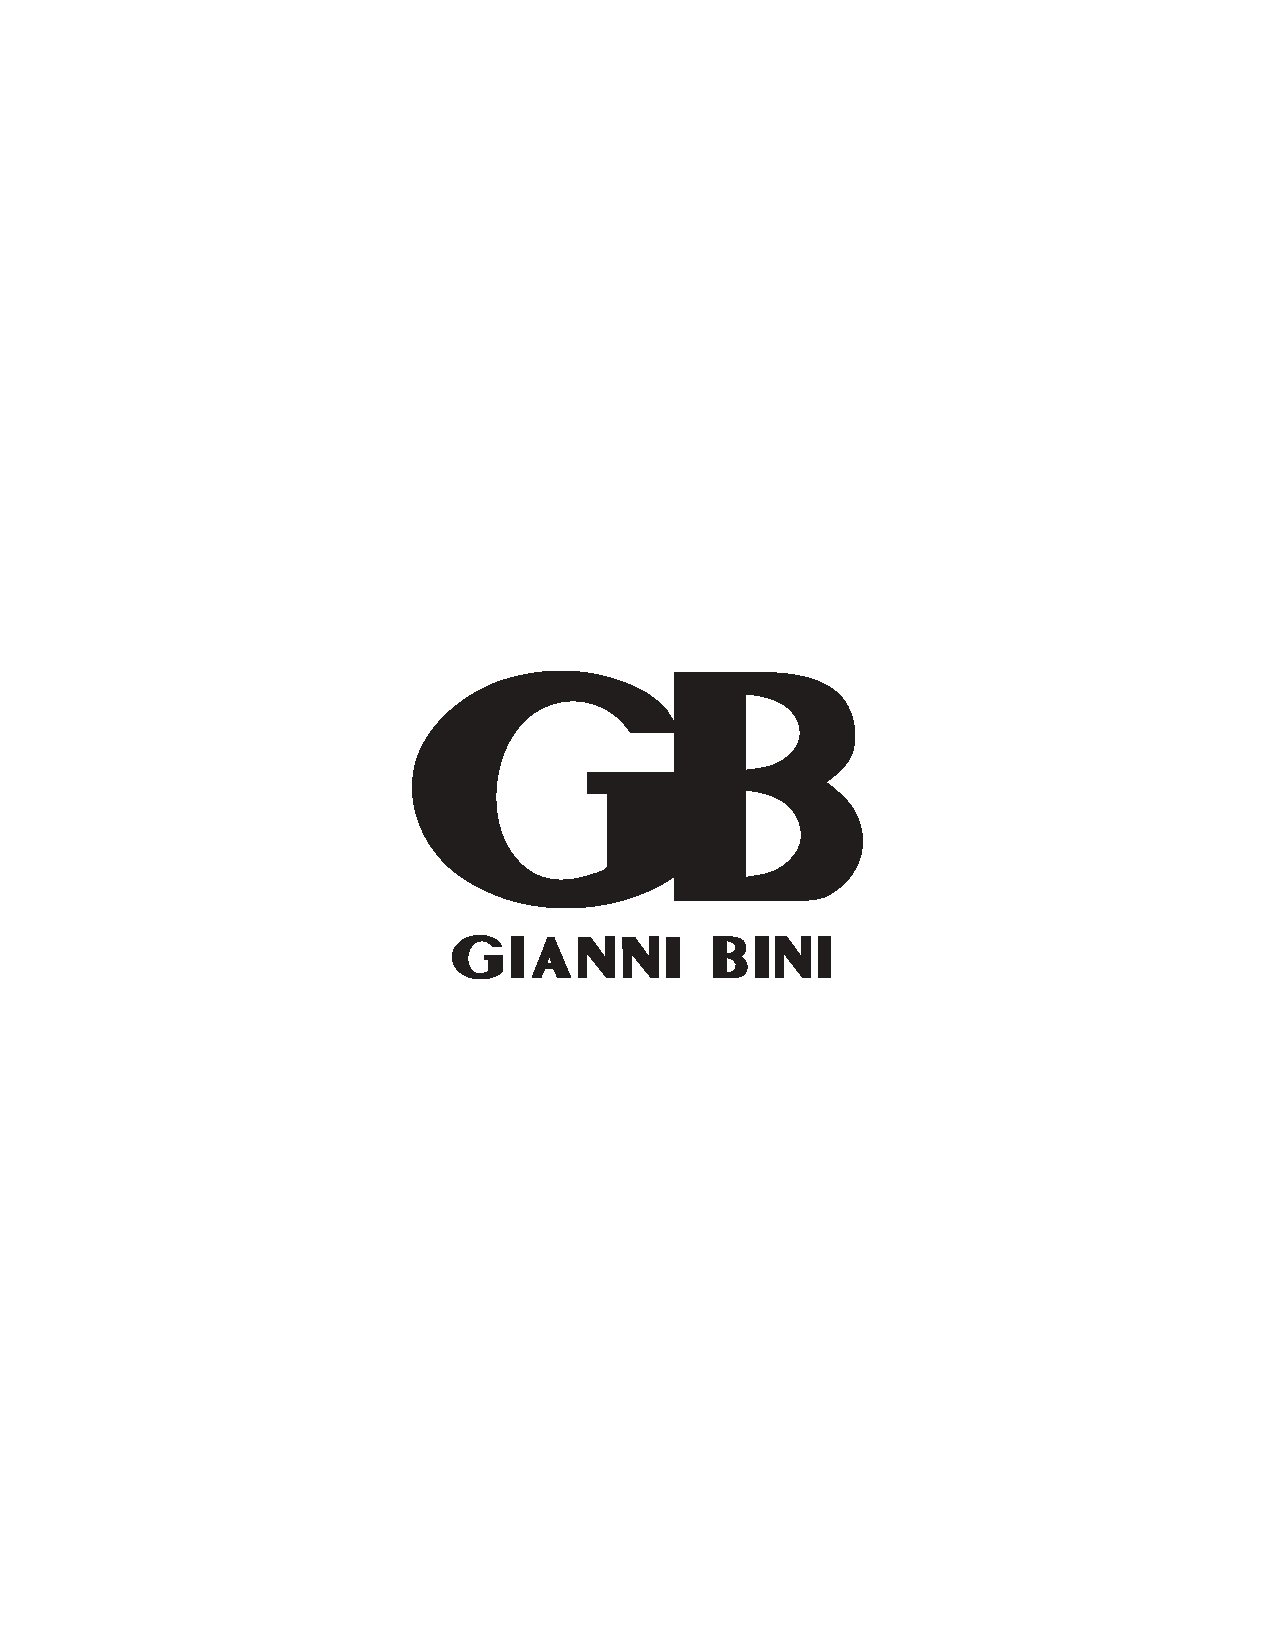 Trademark Logo GB GIANNI BINI